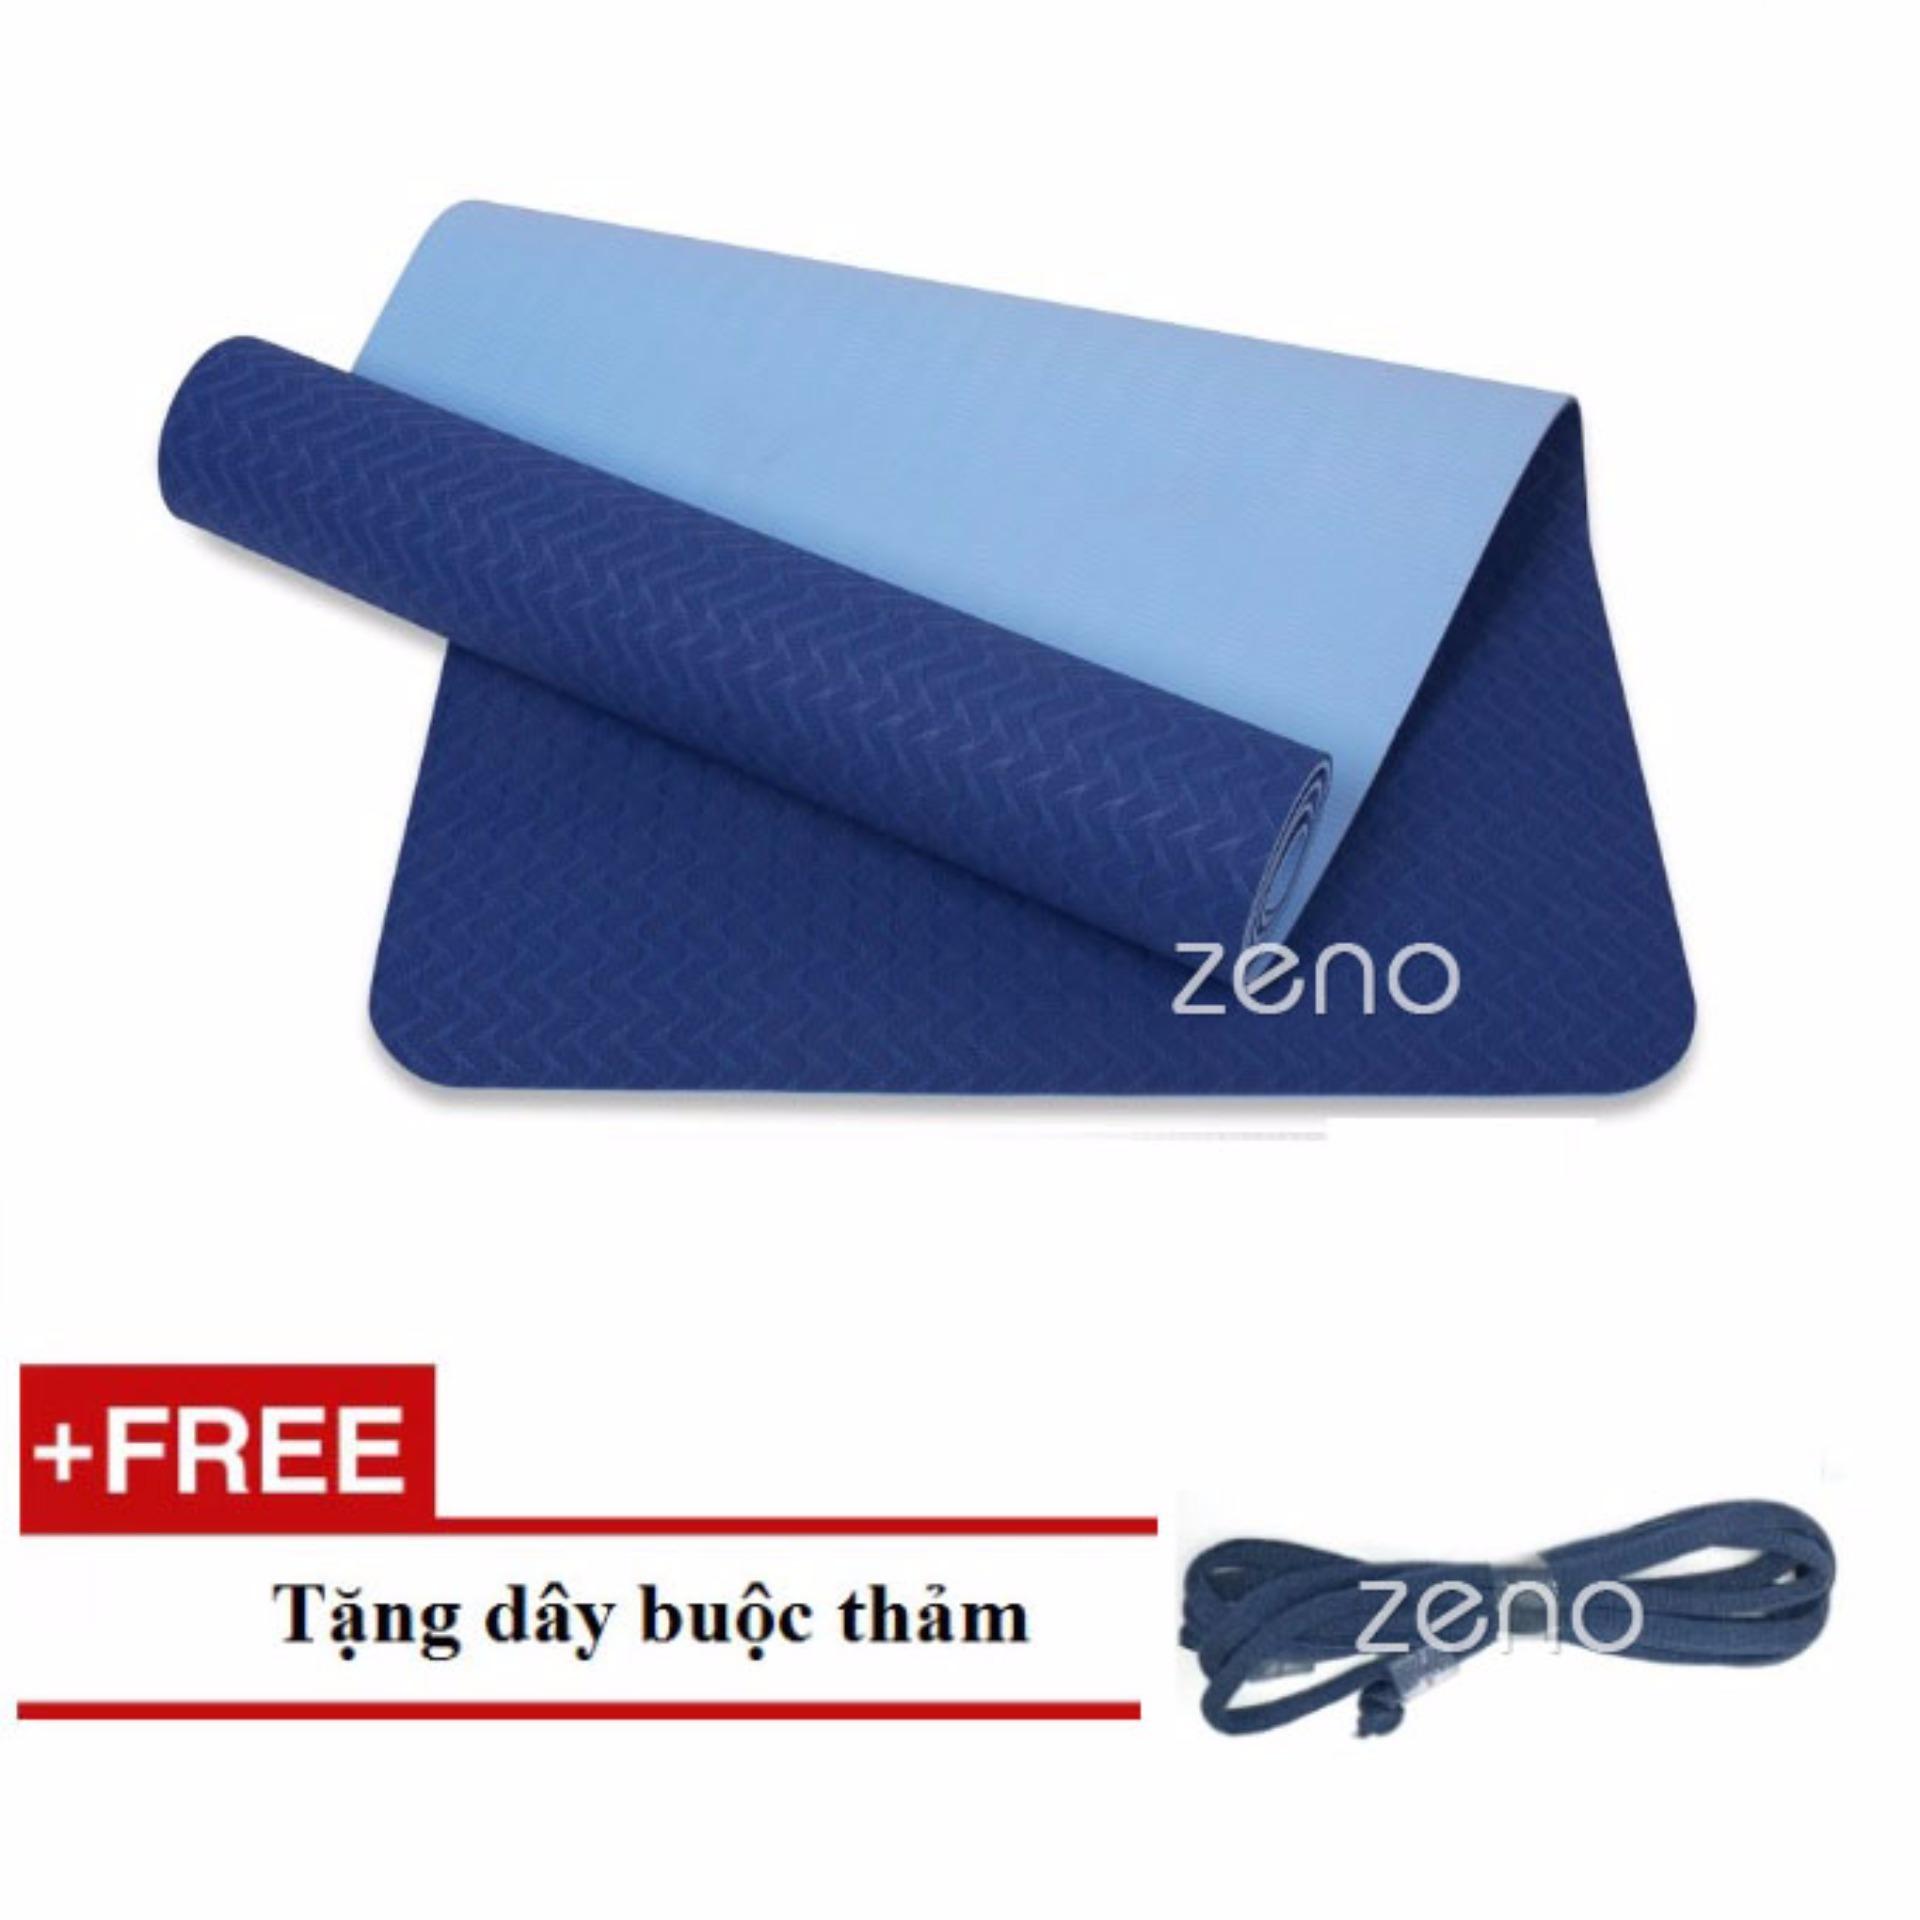 Thảm Tập Yoga Zeno Tpe 2 Lớp + Tặng Dây Buộc Thảm (xanh navy)